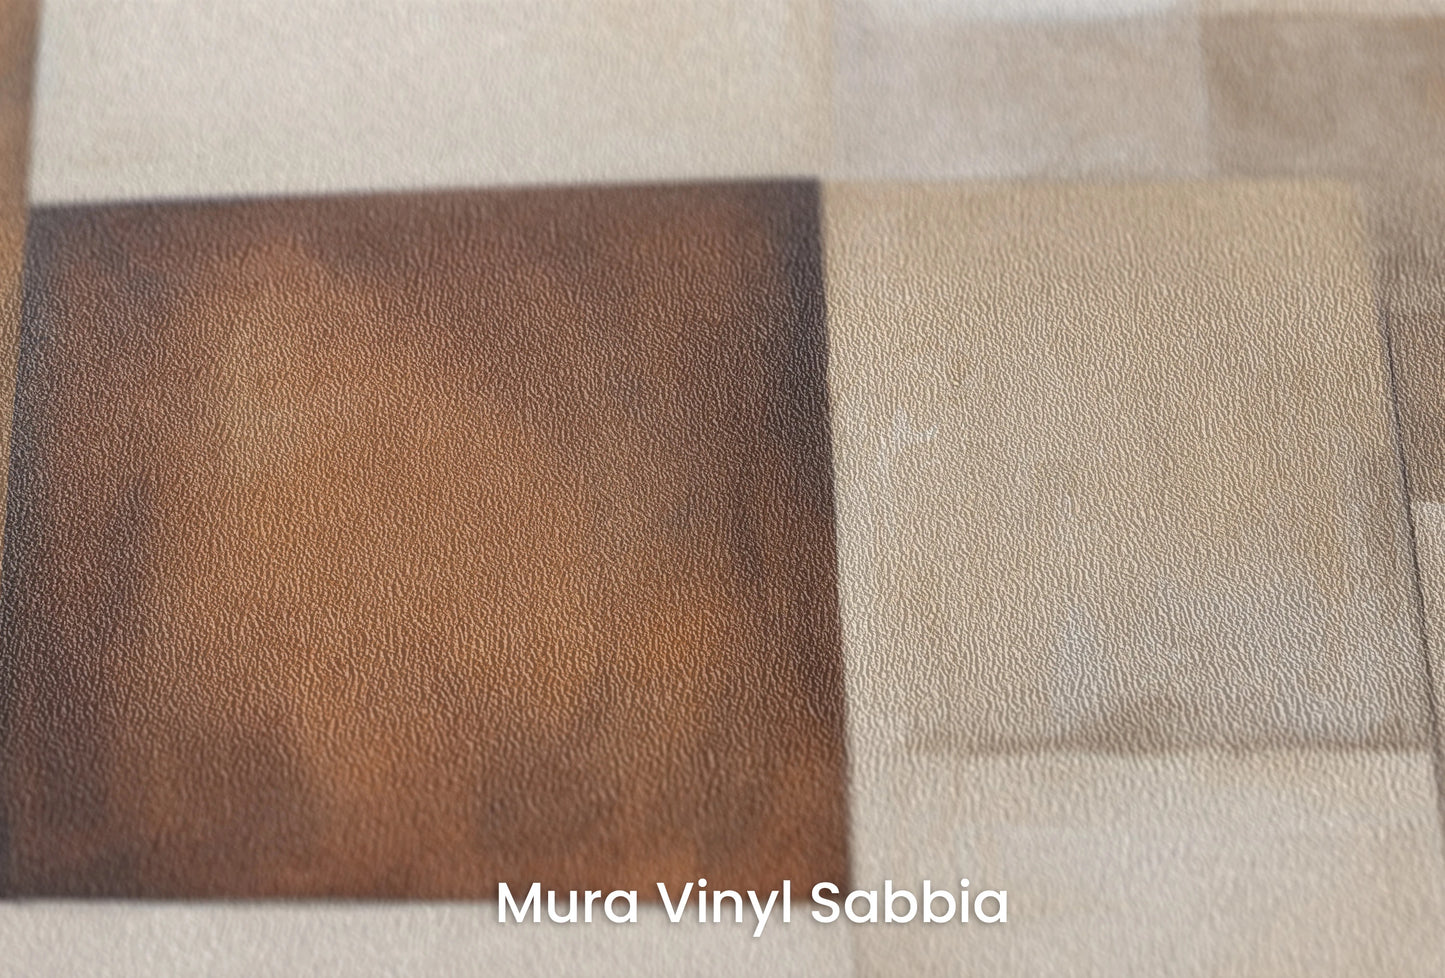 Zbliżenie na artystyczną fototapetę o nazwie Curved Elegance na podłożu Mura Vinyl Sabbia struktura grubego ziarna piasku.